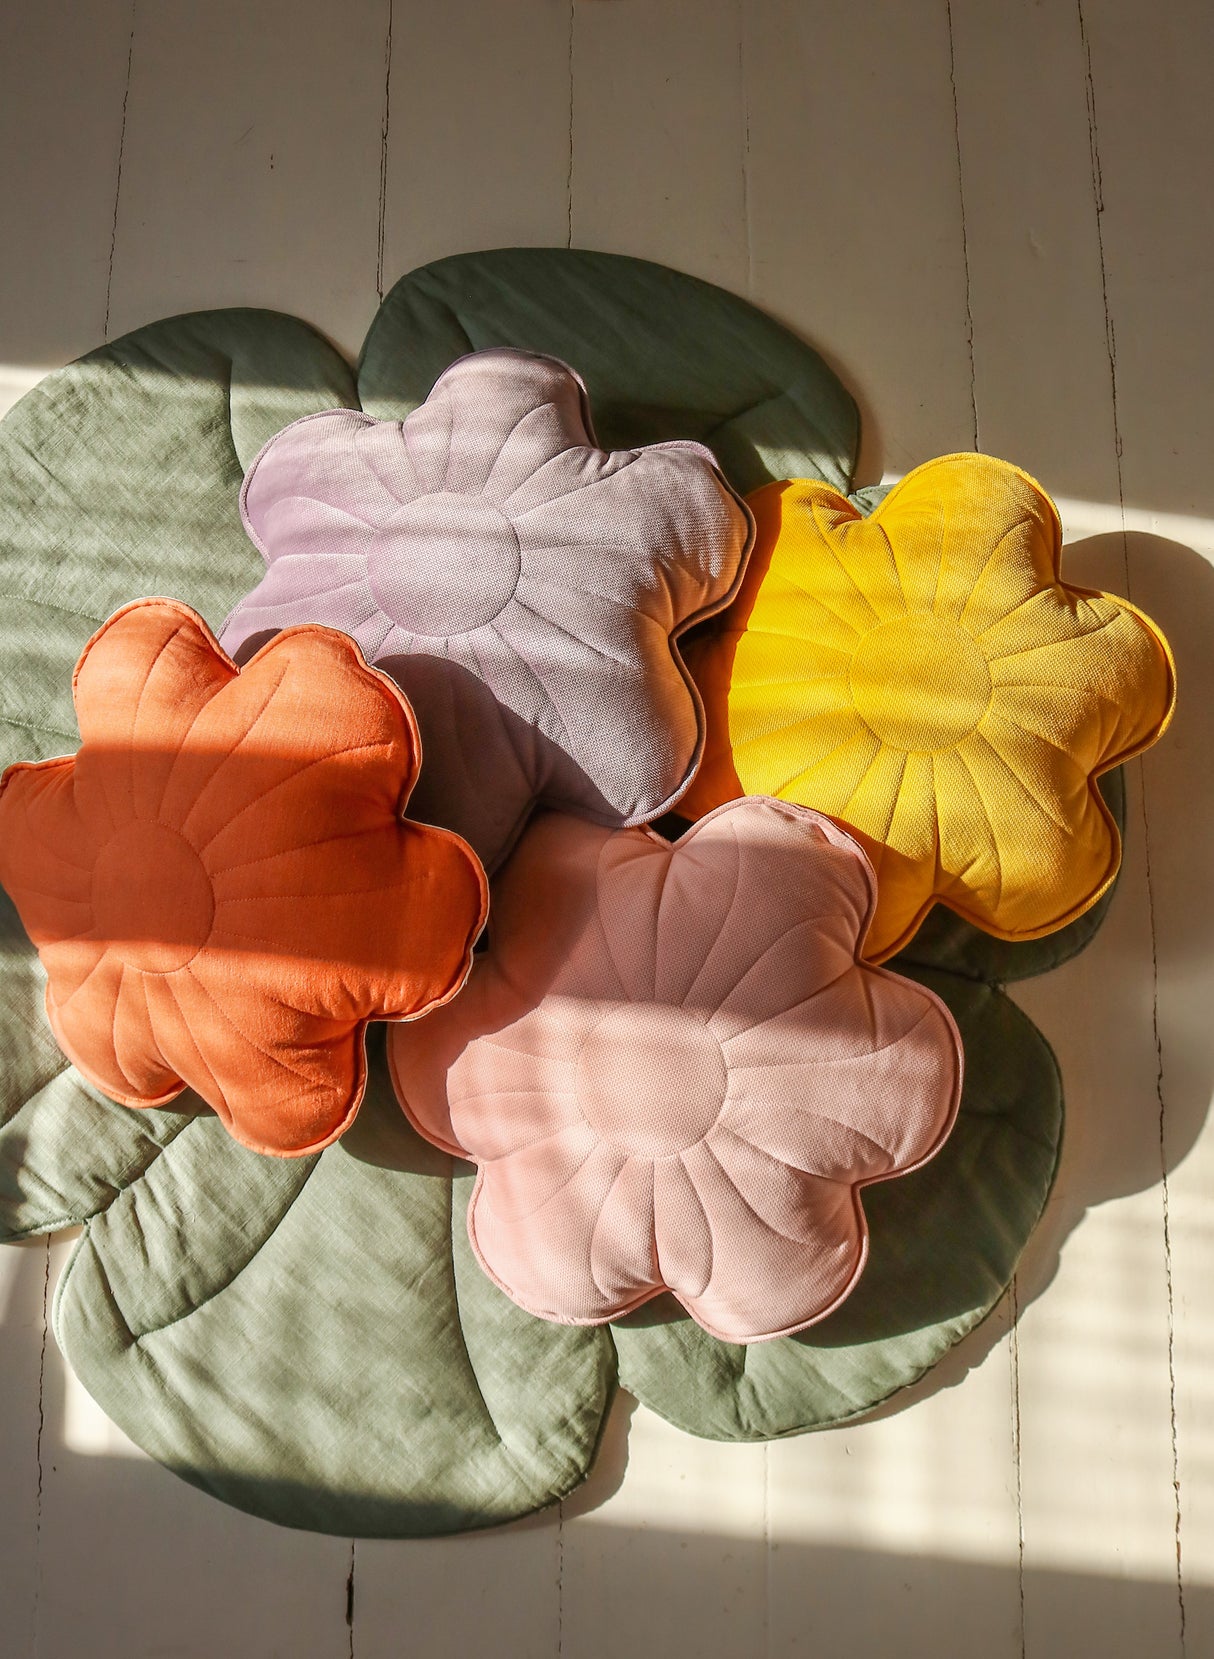 Flower Pillow Velvet "Violet" | Kids Room & Nursery Decor - Sumiye Co